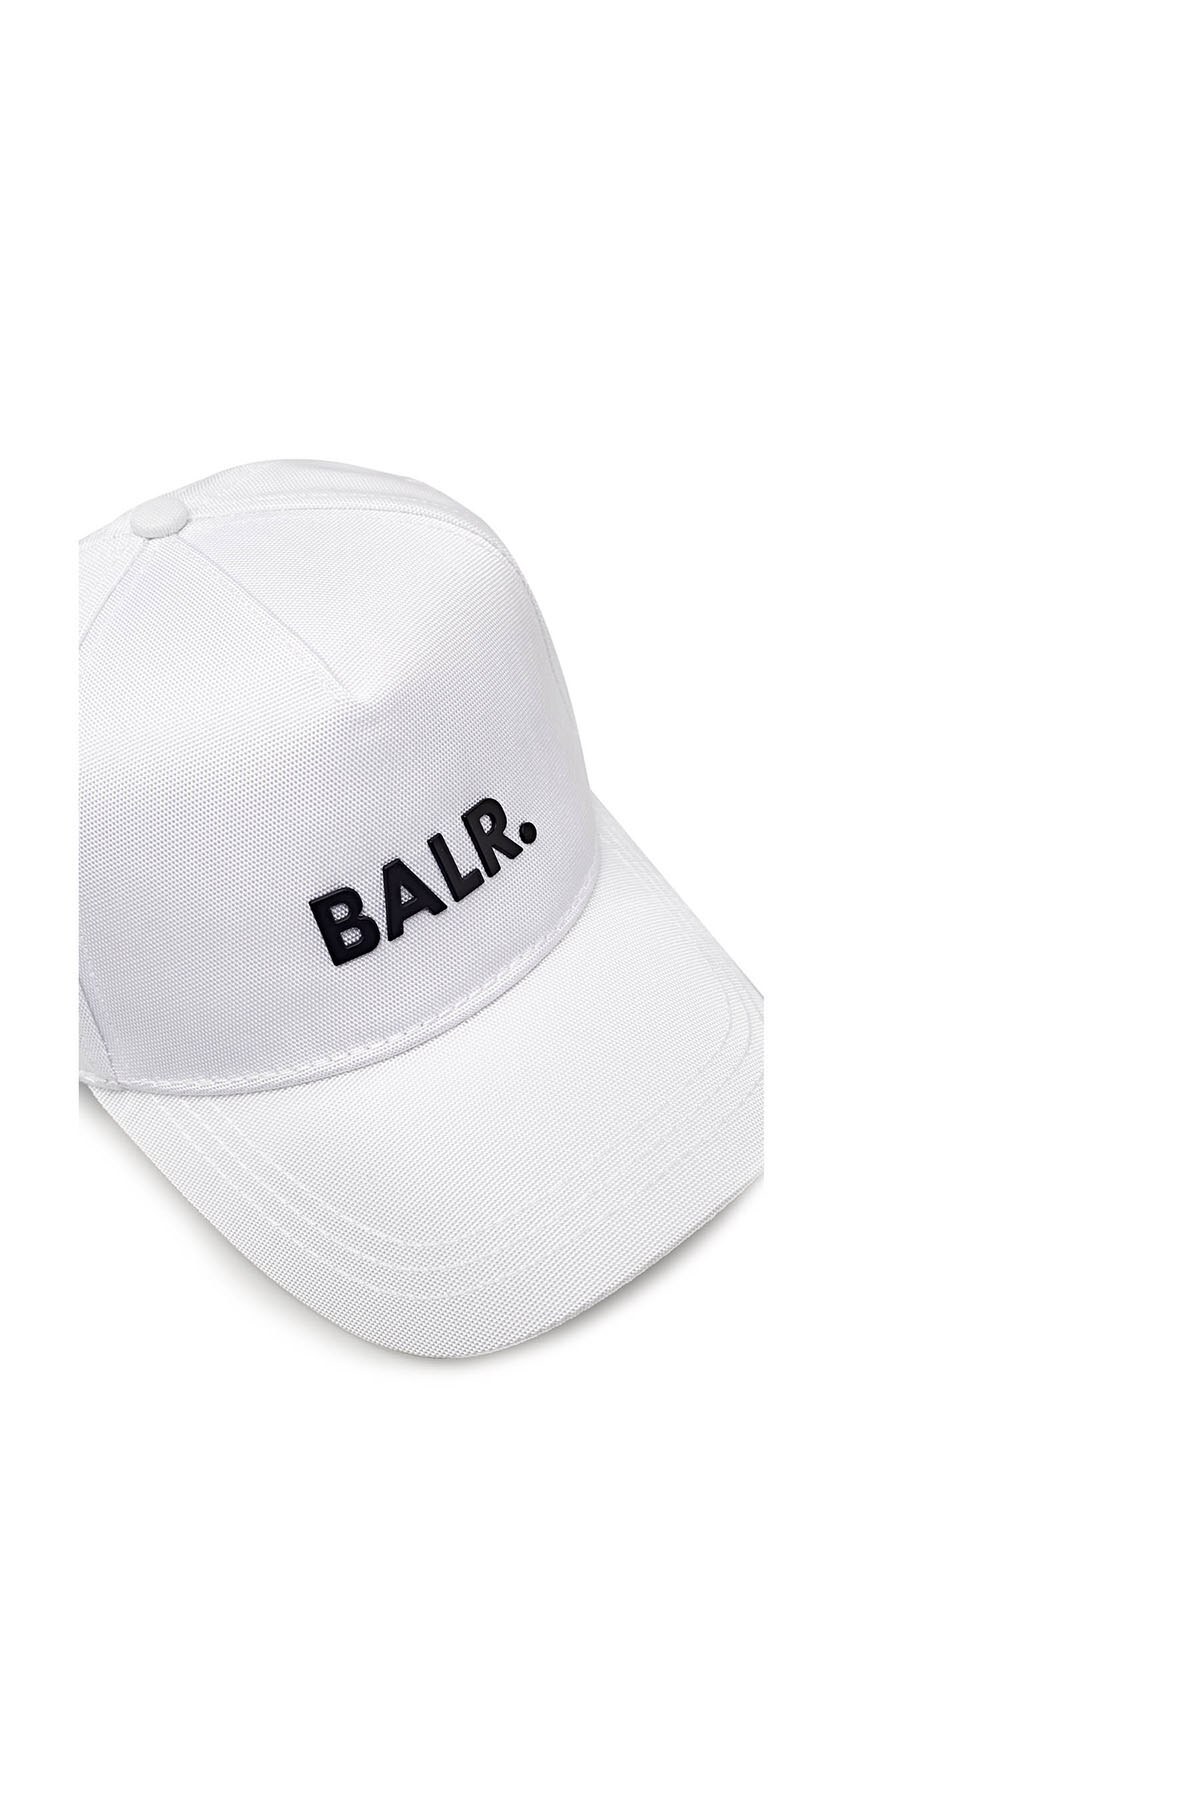 Balr Pamuklu Marka Logolu Erkek Şapka B10014 W BEYAZ